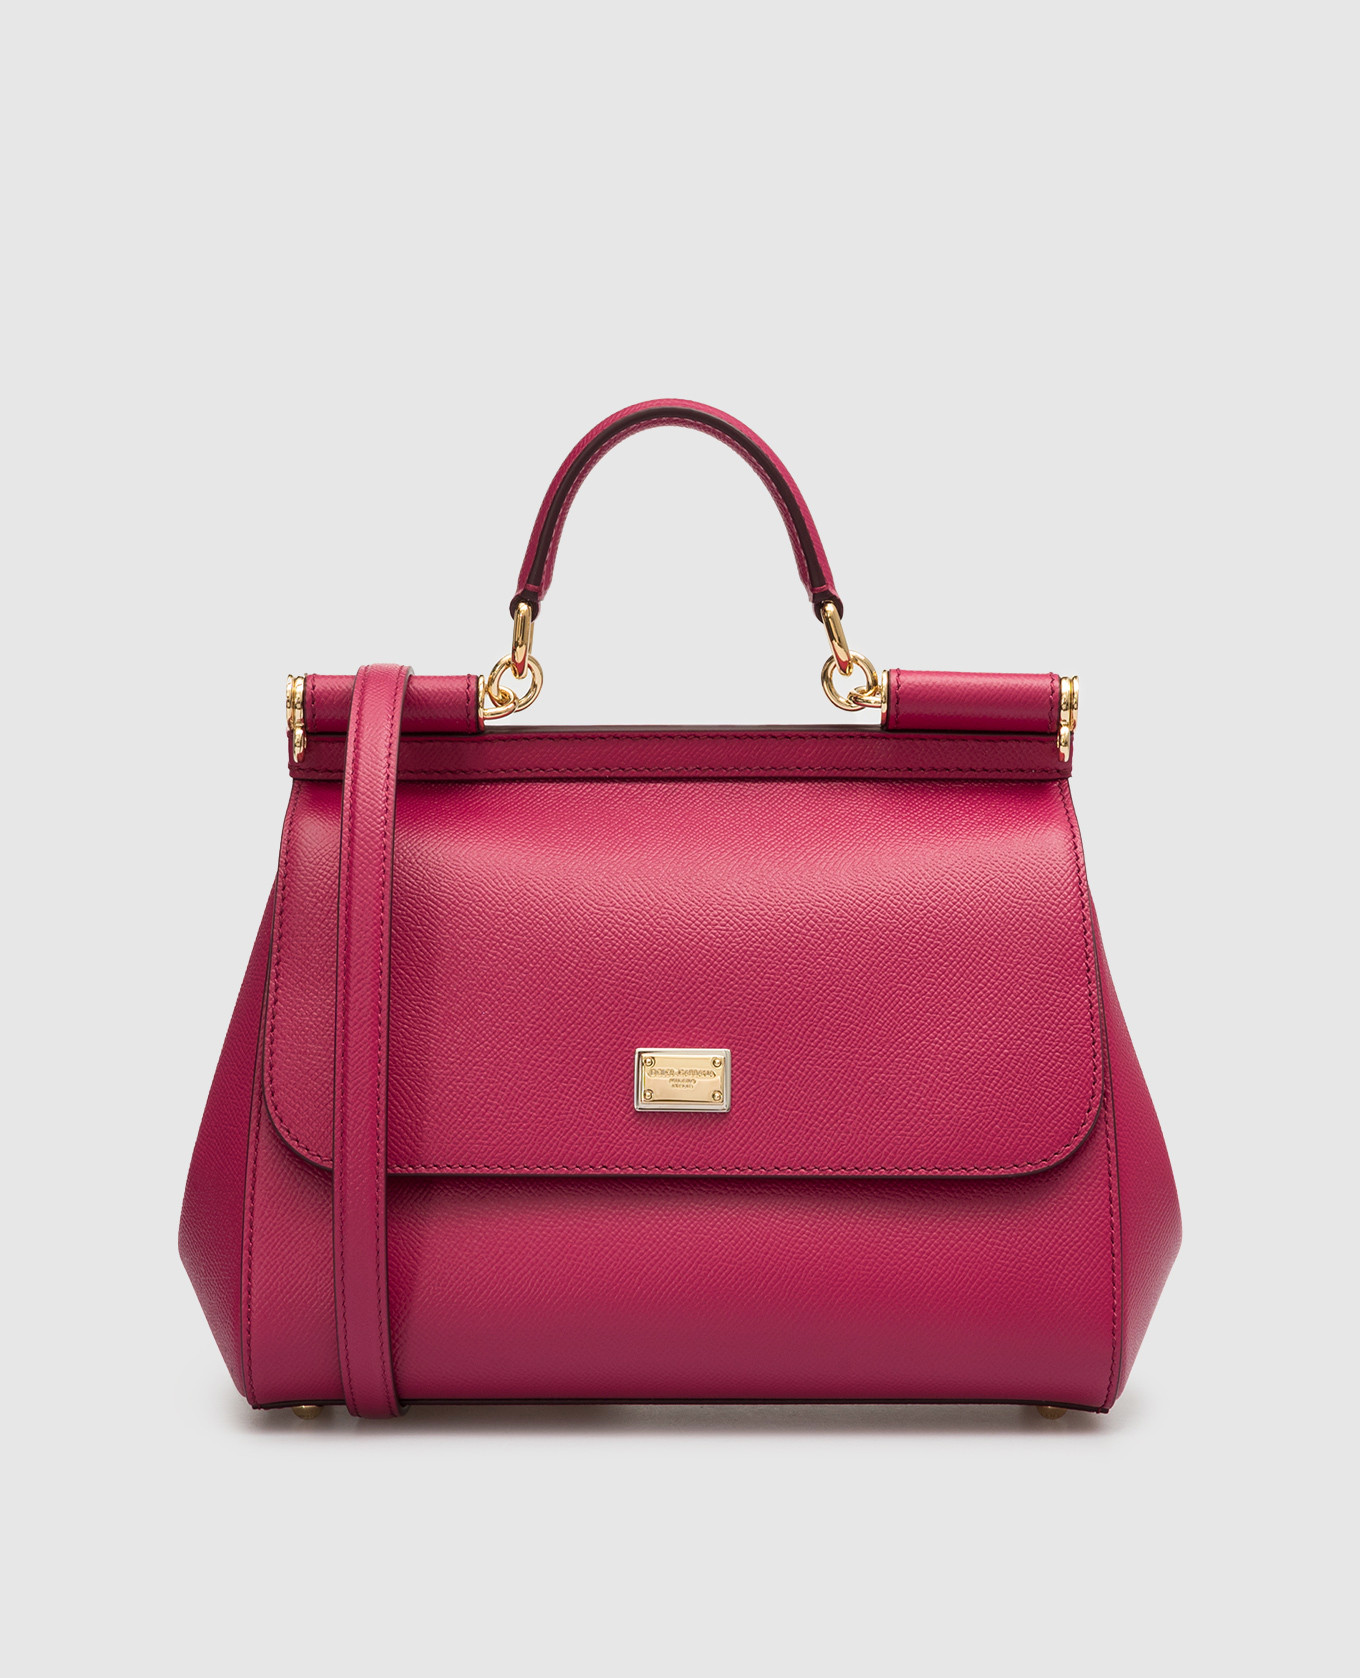 SICILY pink leather satchel bag